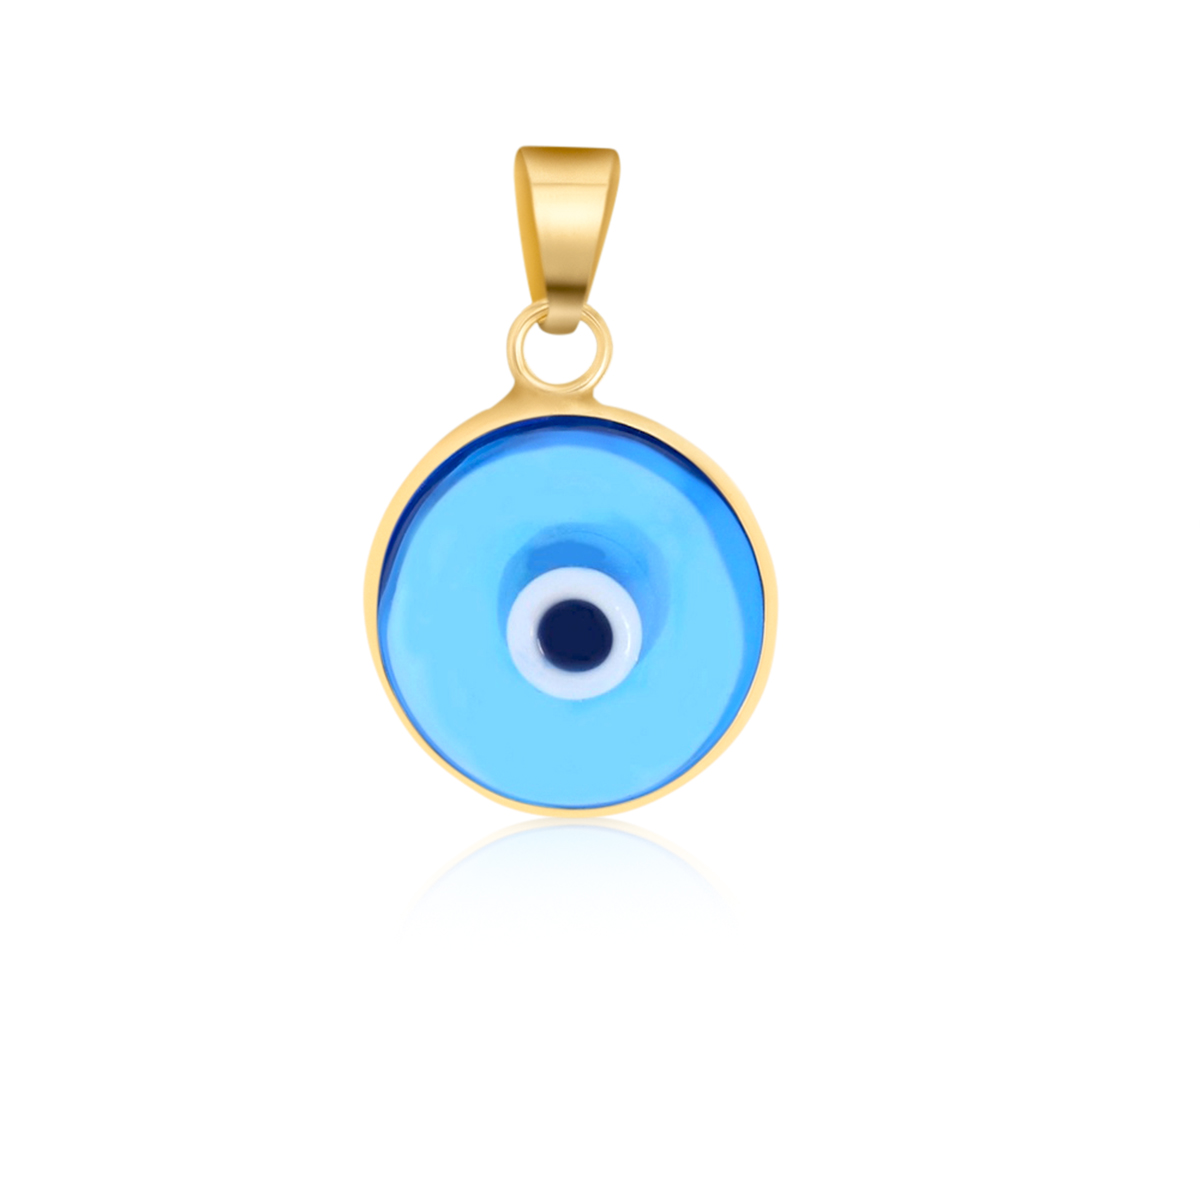 Goldanhänger blaues Auge in 585 Gelbgold 8002 jetzt online bestellen!